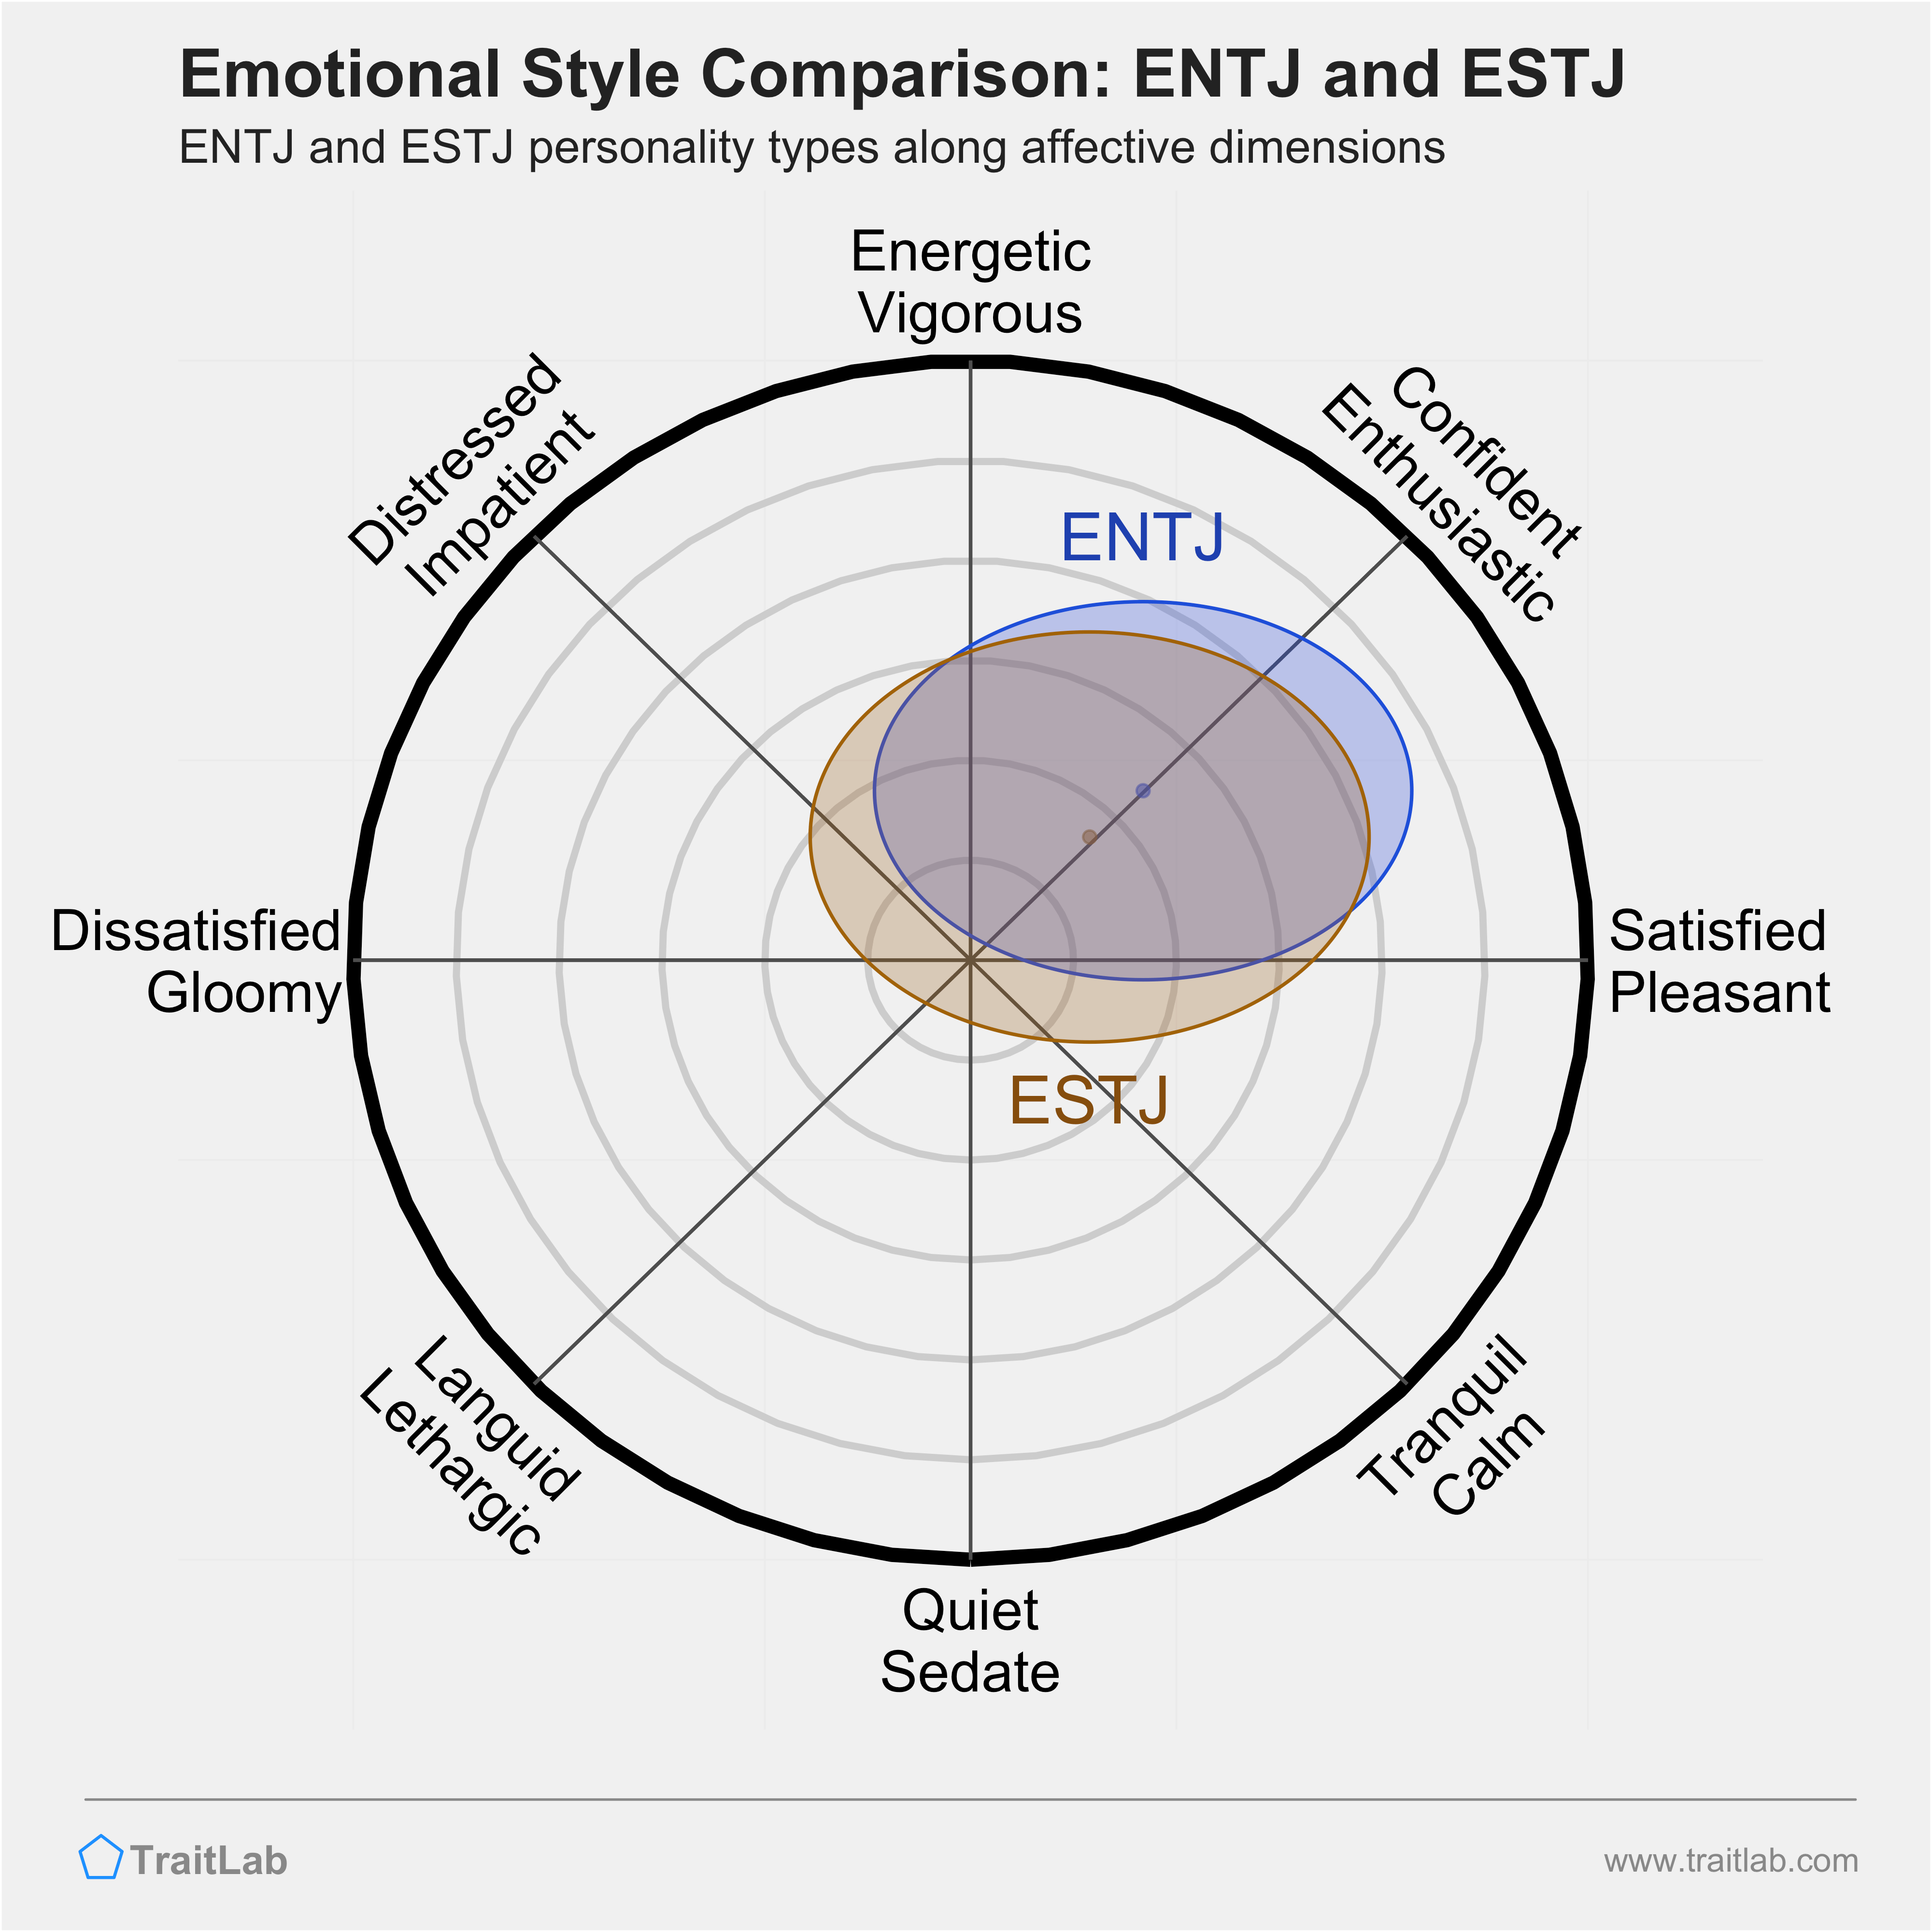 ENTJ and ESTJ comparison across emotional (affective) dimensions